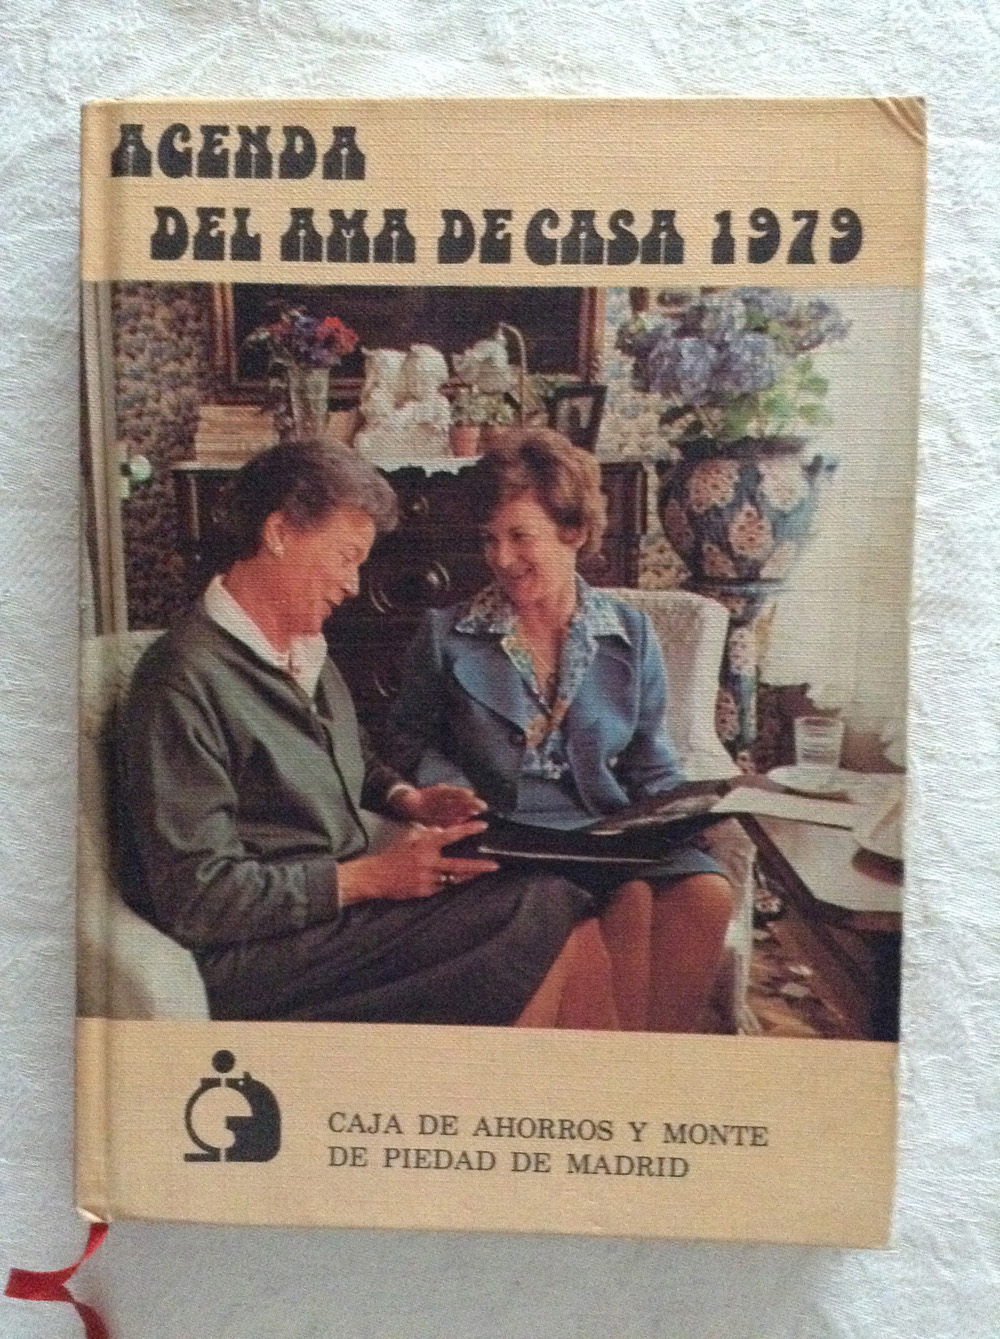 Agenda del ama de casa 1979